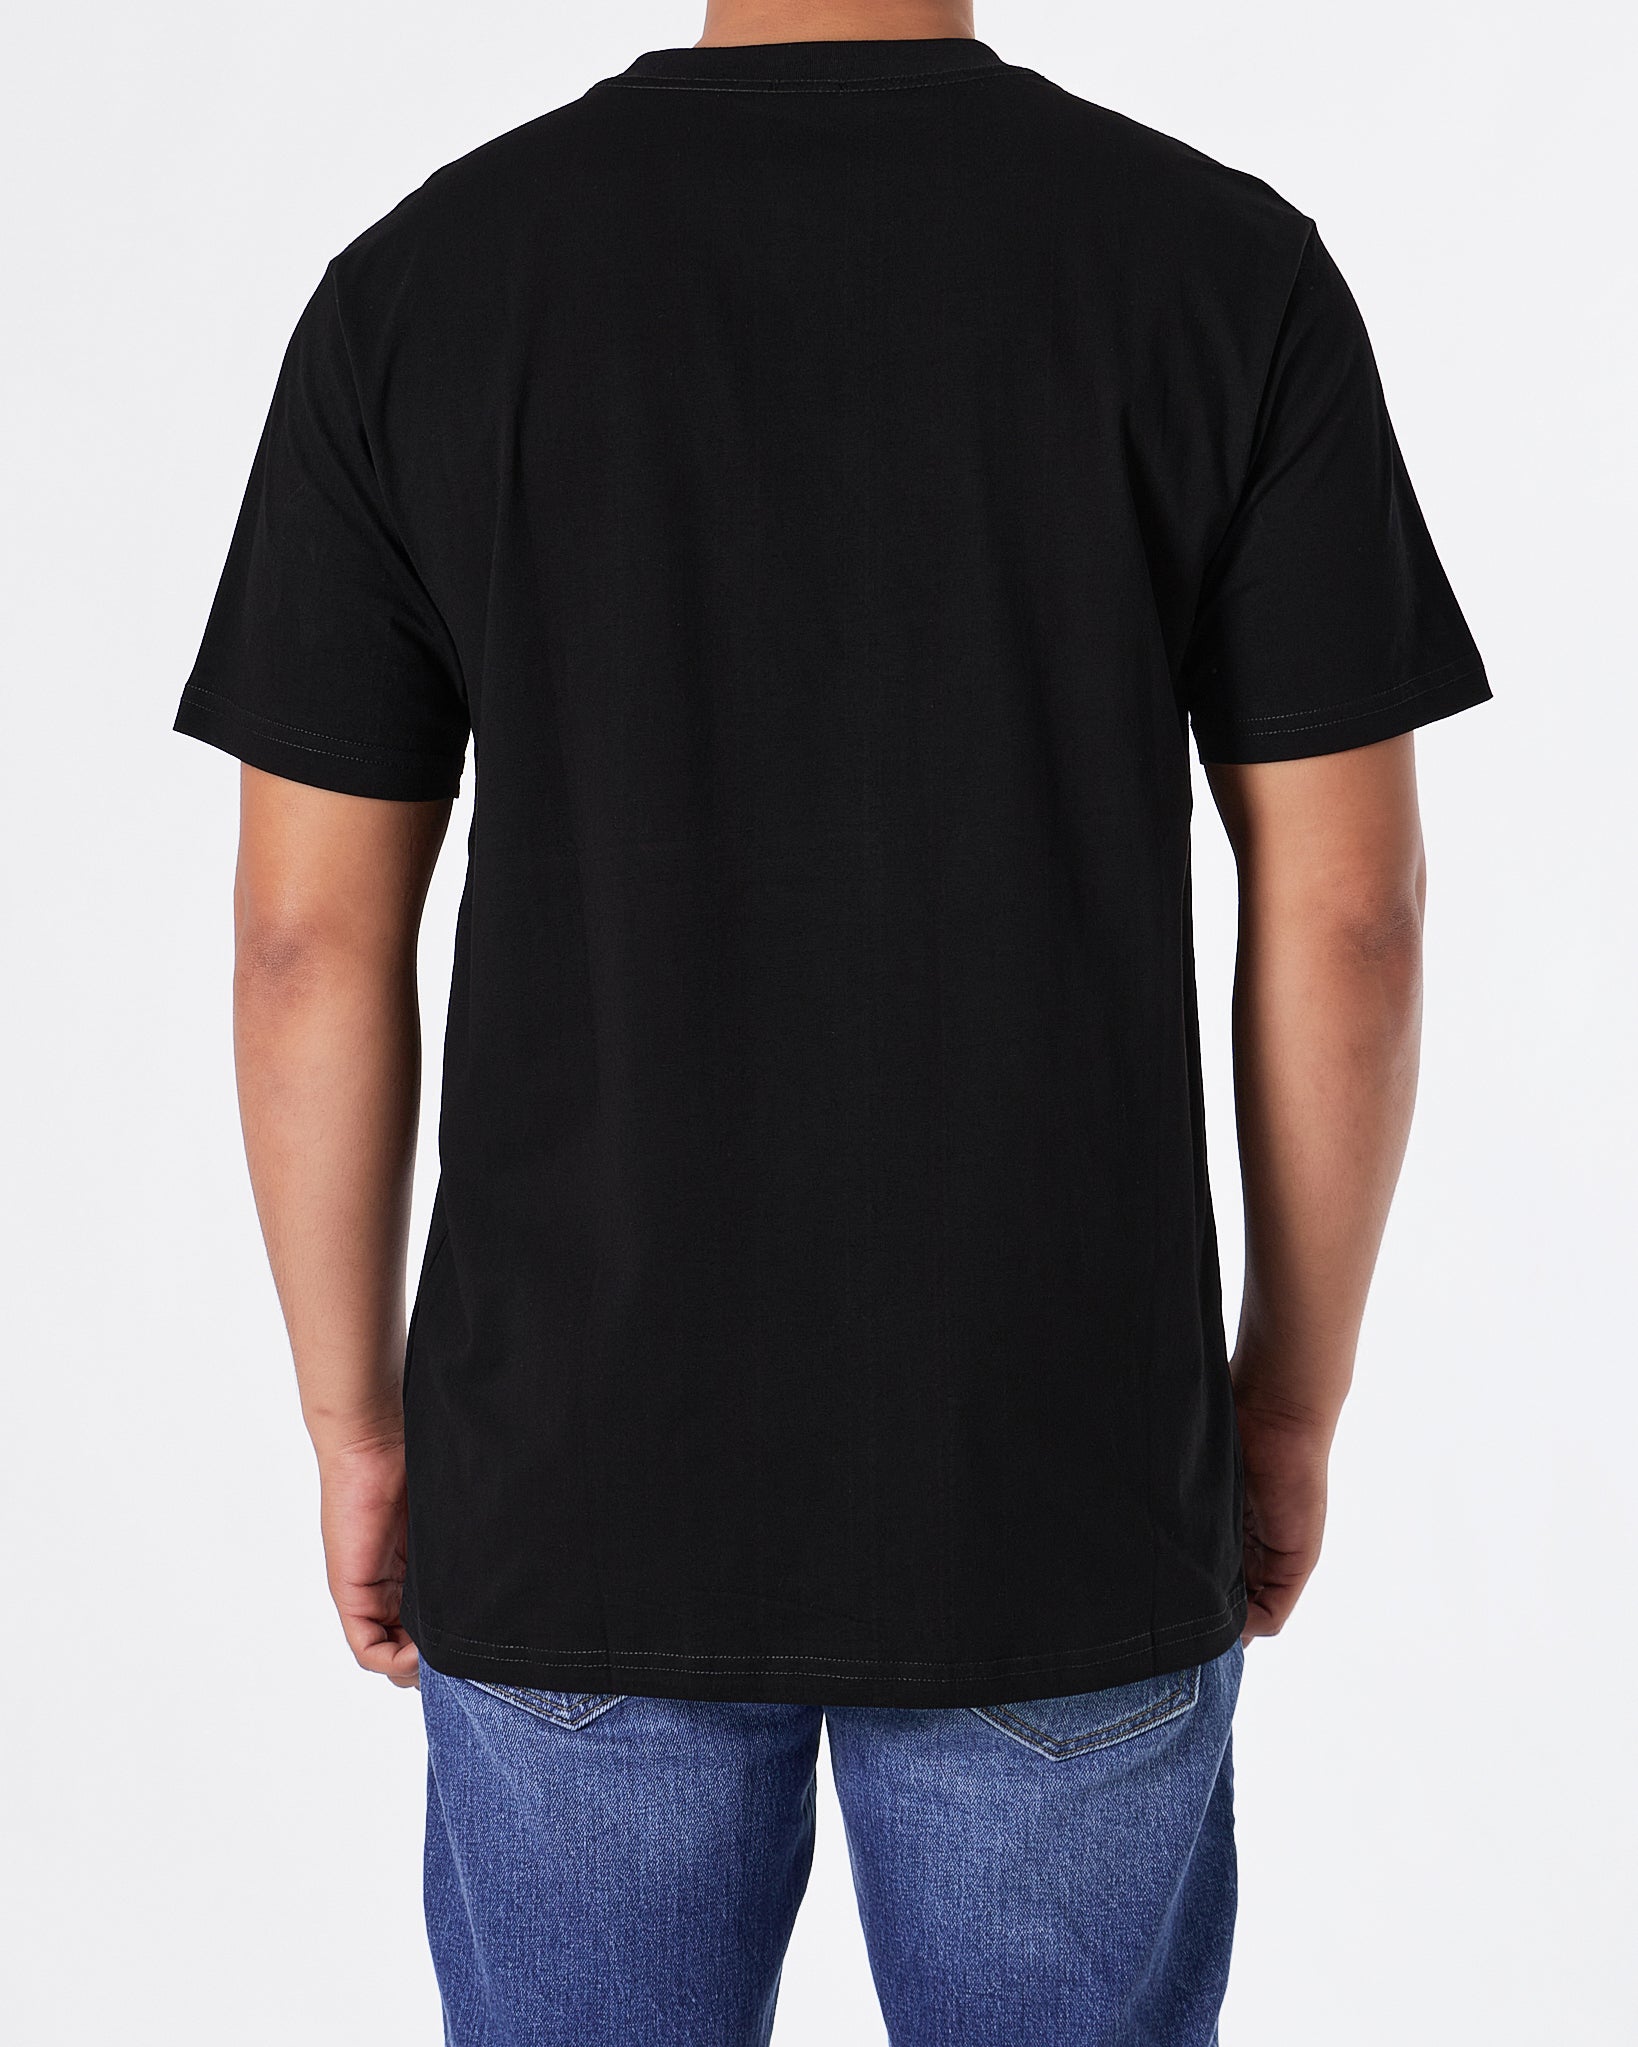 LOW Logo Printed Men Black T-Shirt 20.90